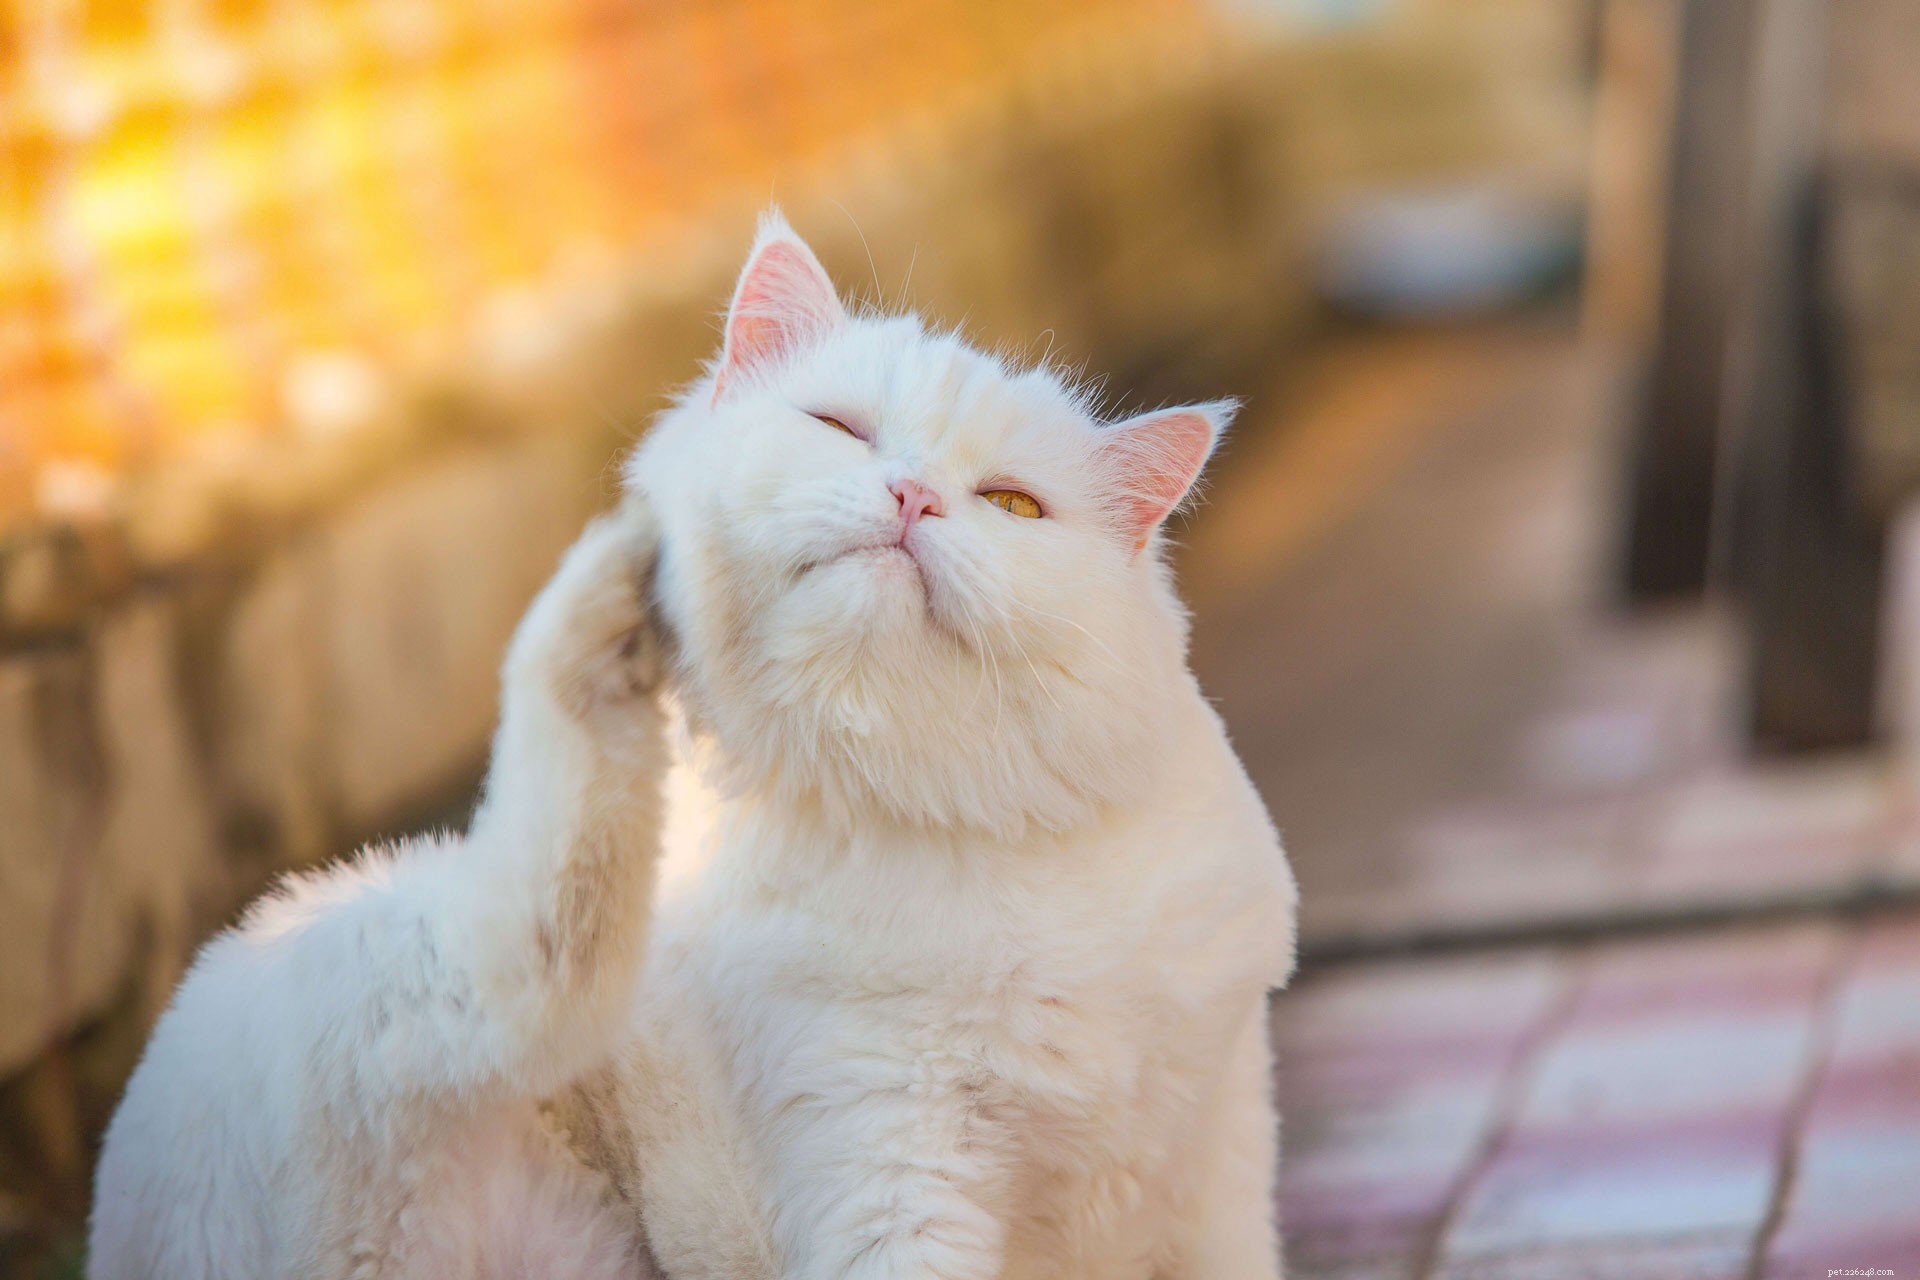 Facili rimedi casalinghi per il trattamento degli acari dell orecchio nei gatti